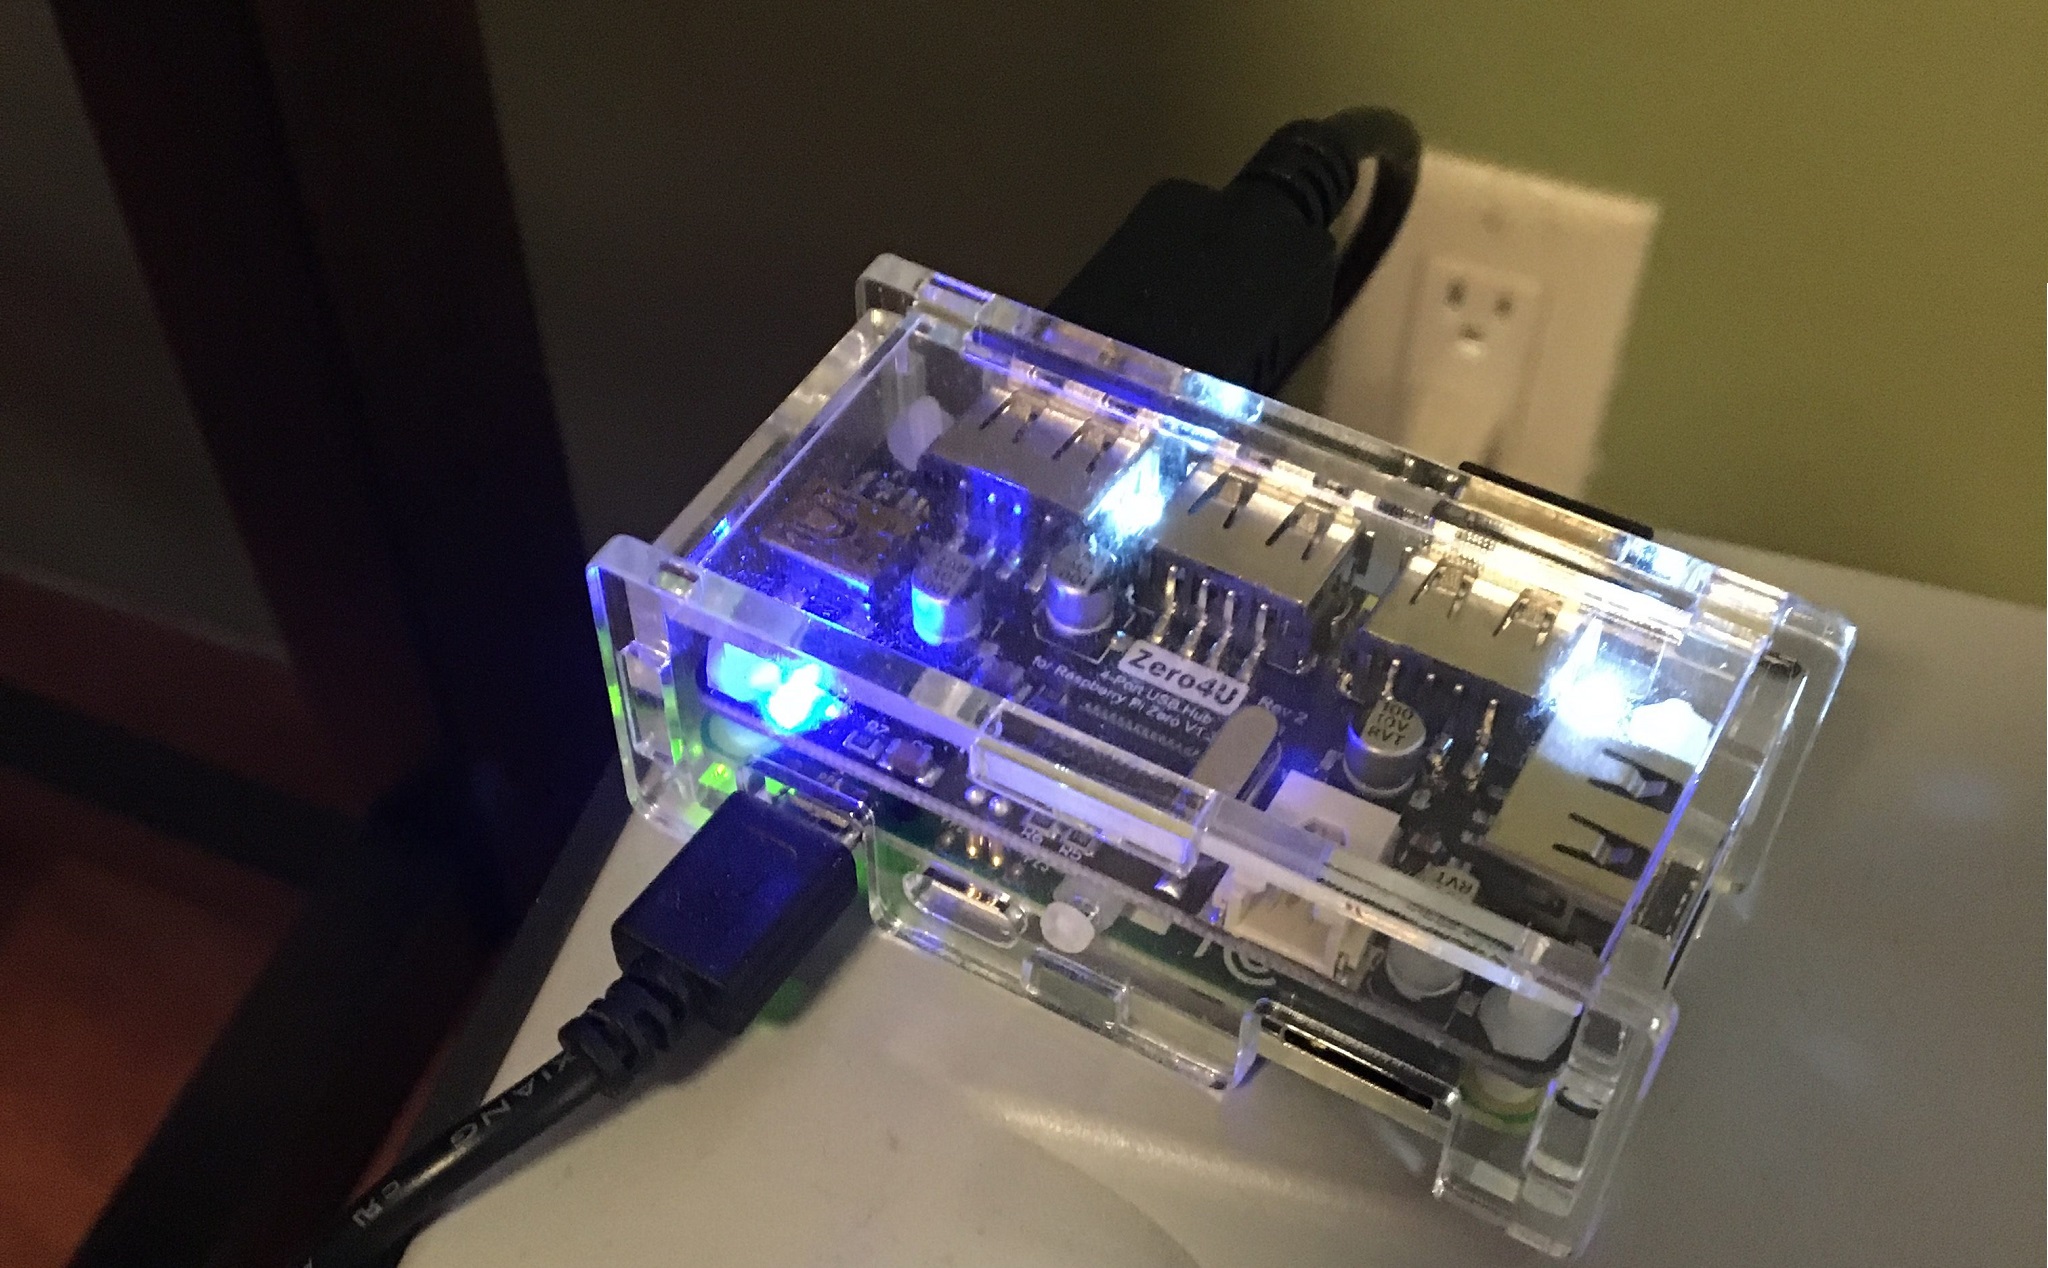 [DIY] Hướng dẫn làm print server bằng Raspberry Pi